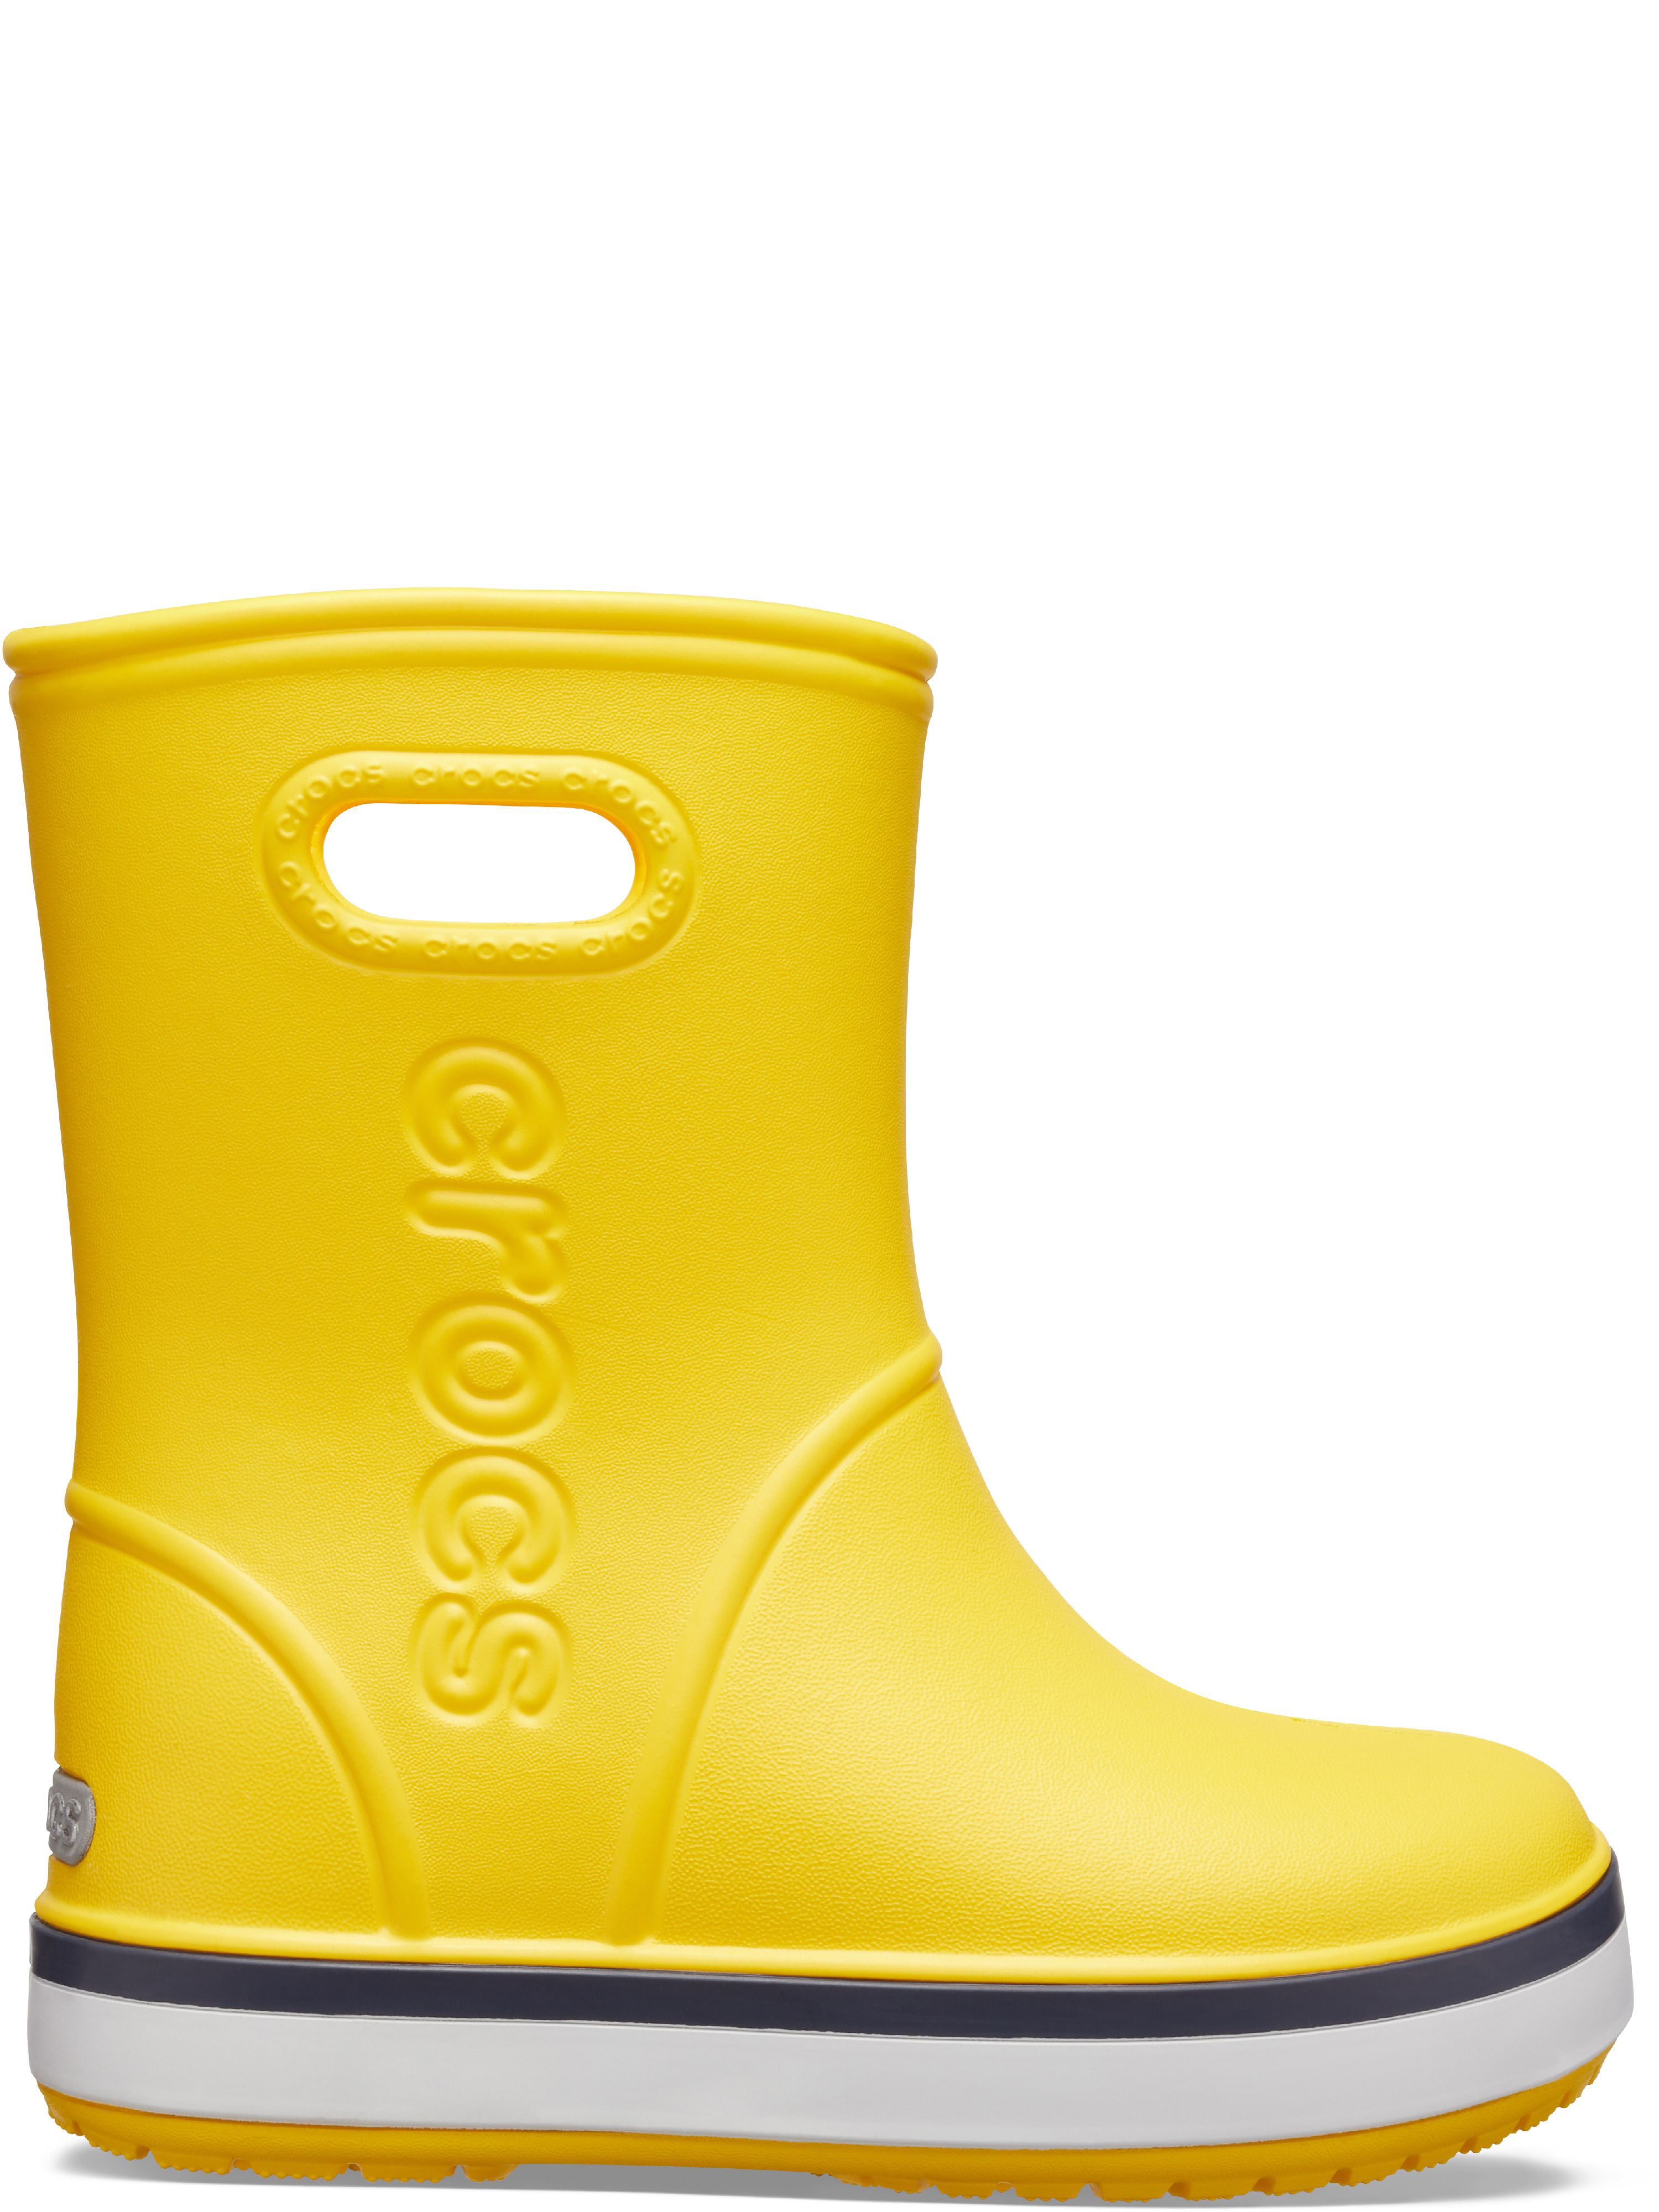 Резиновые crocs женские. Crocs Crocband Rain Boot. Сапоги Crocs Crocband. Резиновые сапоги Crocs Crocband Rain Boot. Крокс желтые резиновые сапоги.